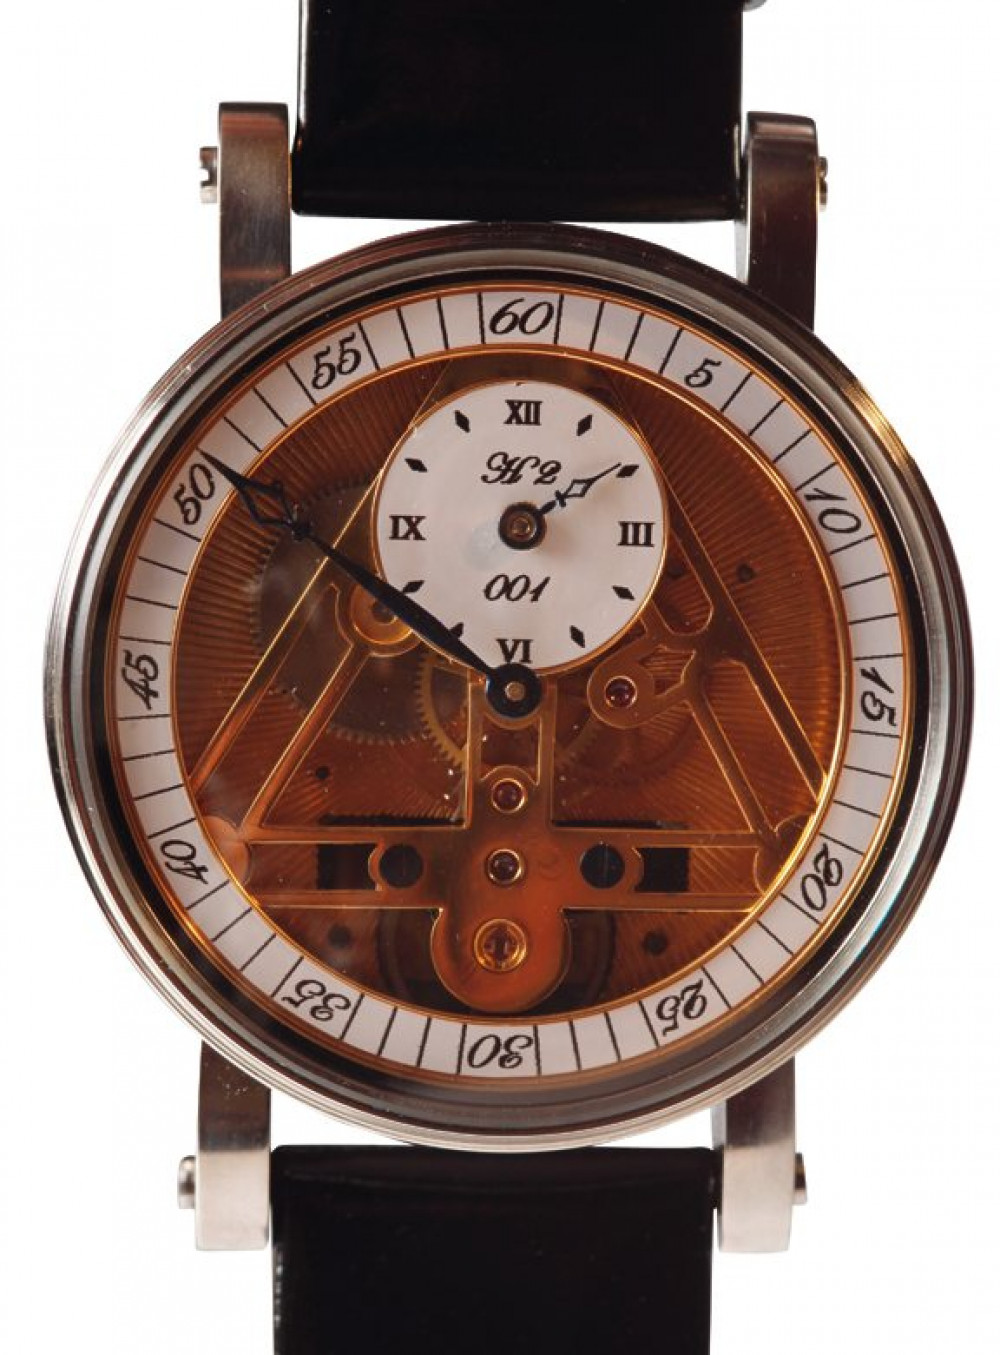 Zegarek firmy Bleitz, model H2